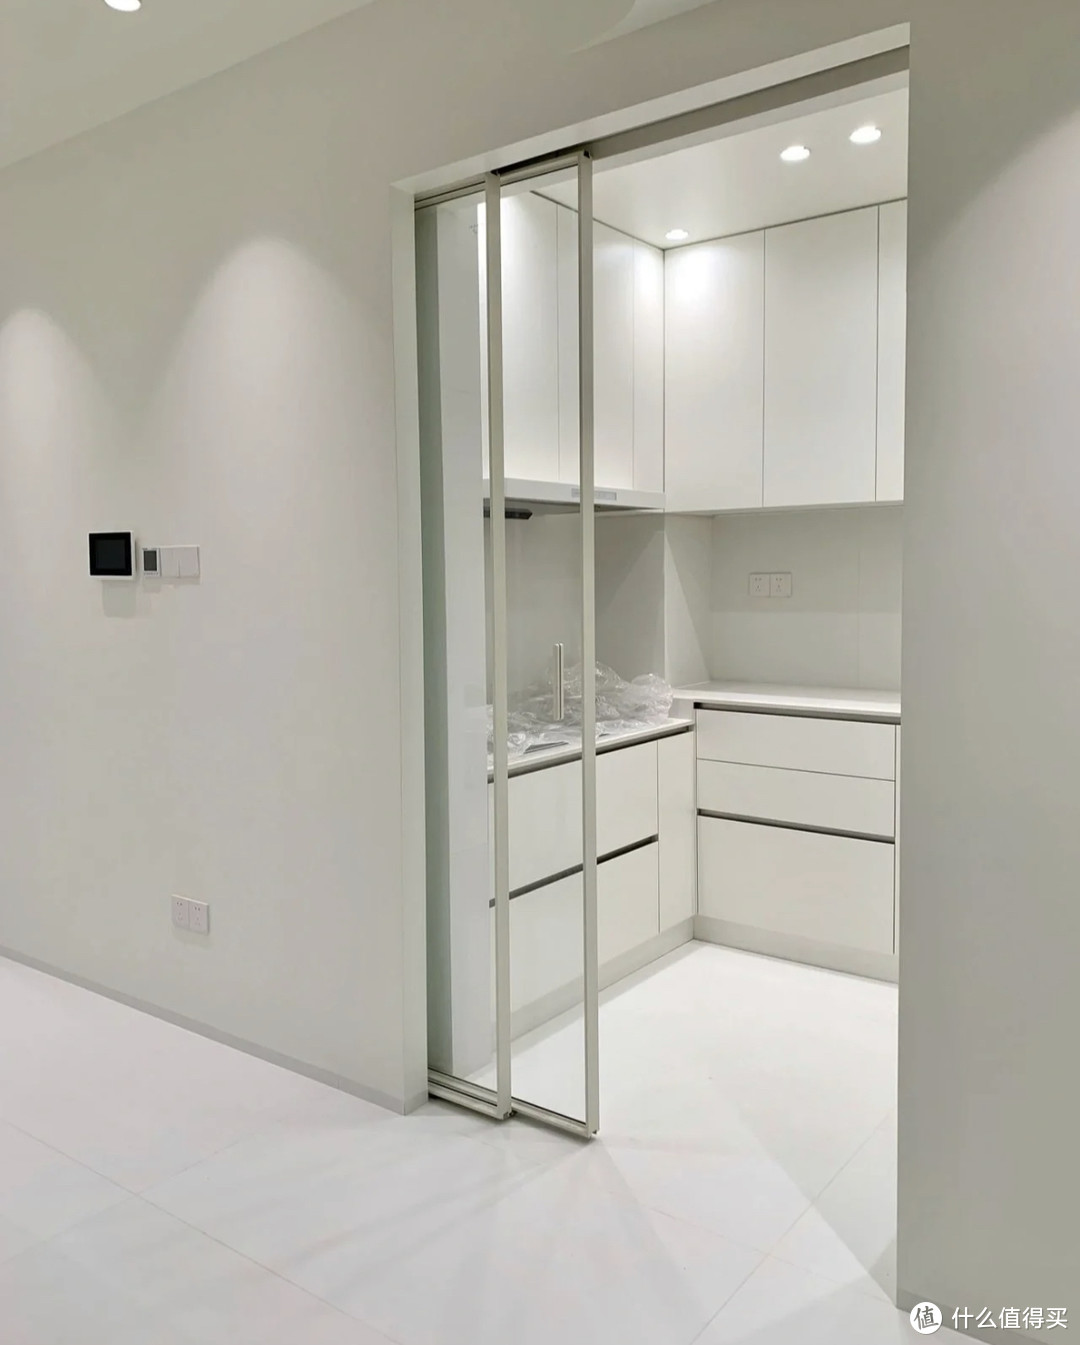 厨房推拉门_2020年黑色窄框门玻璃门厨房推拉门卫生间玻璃移门非标定制 - 阿里巴巴